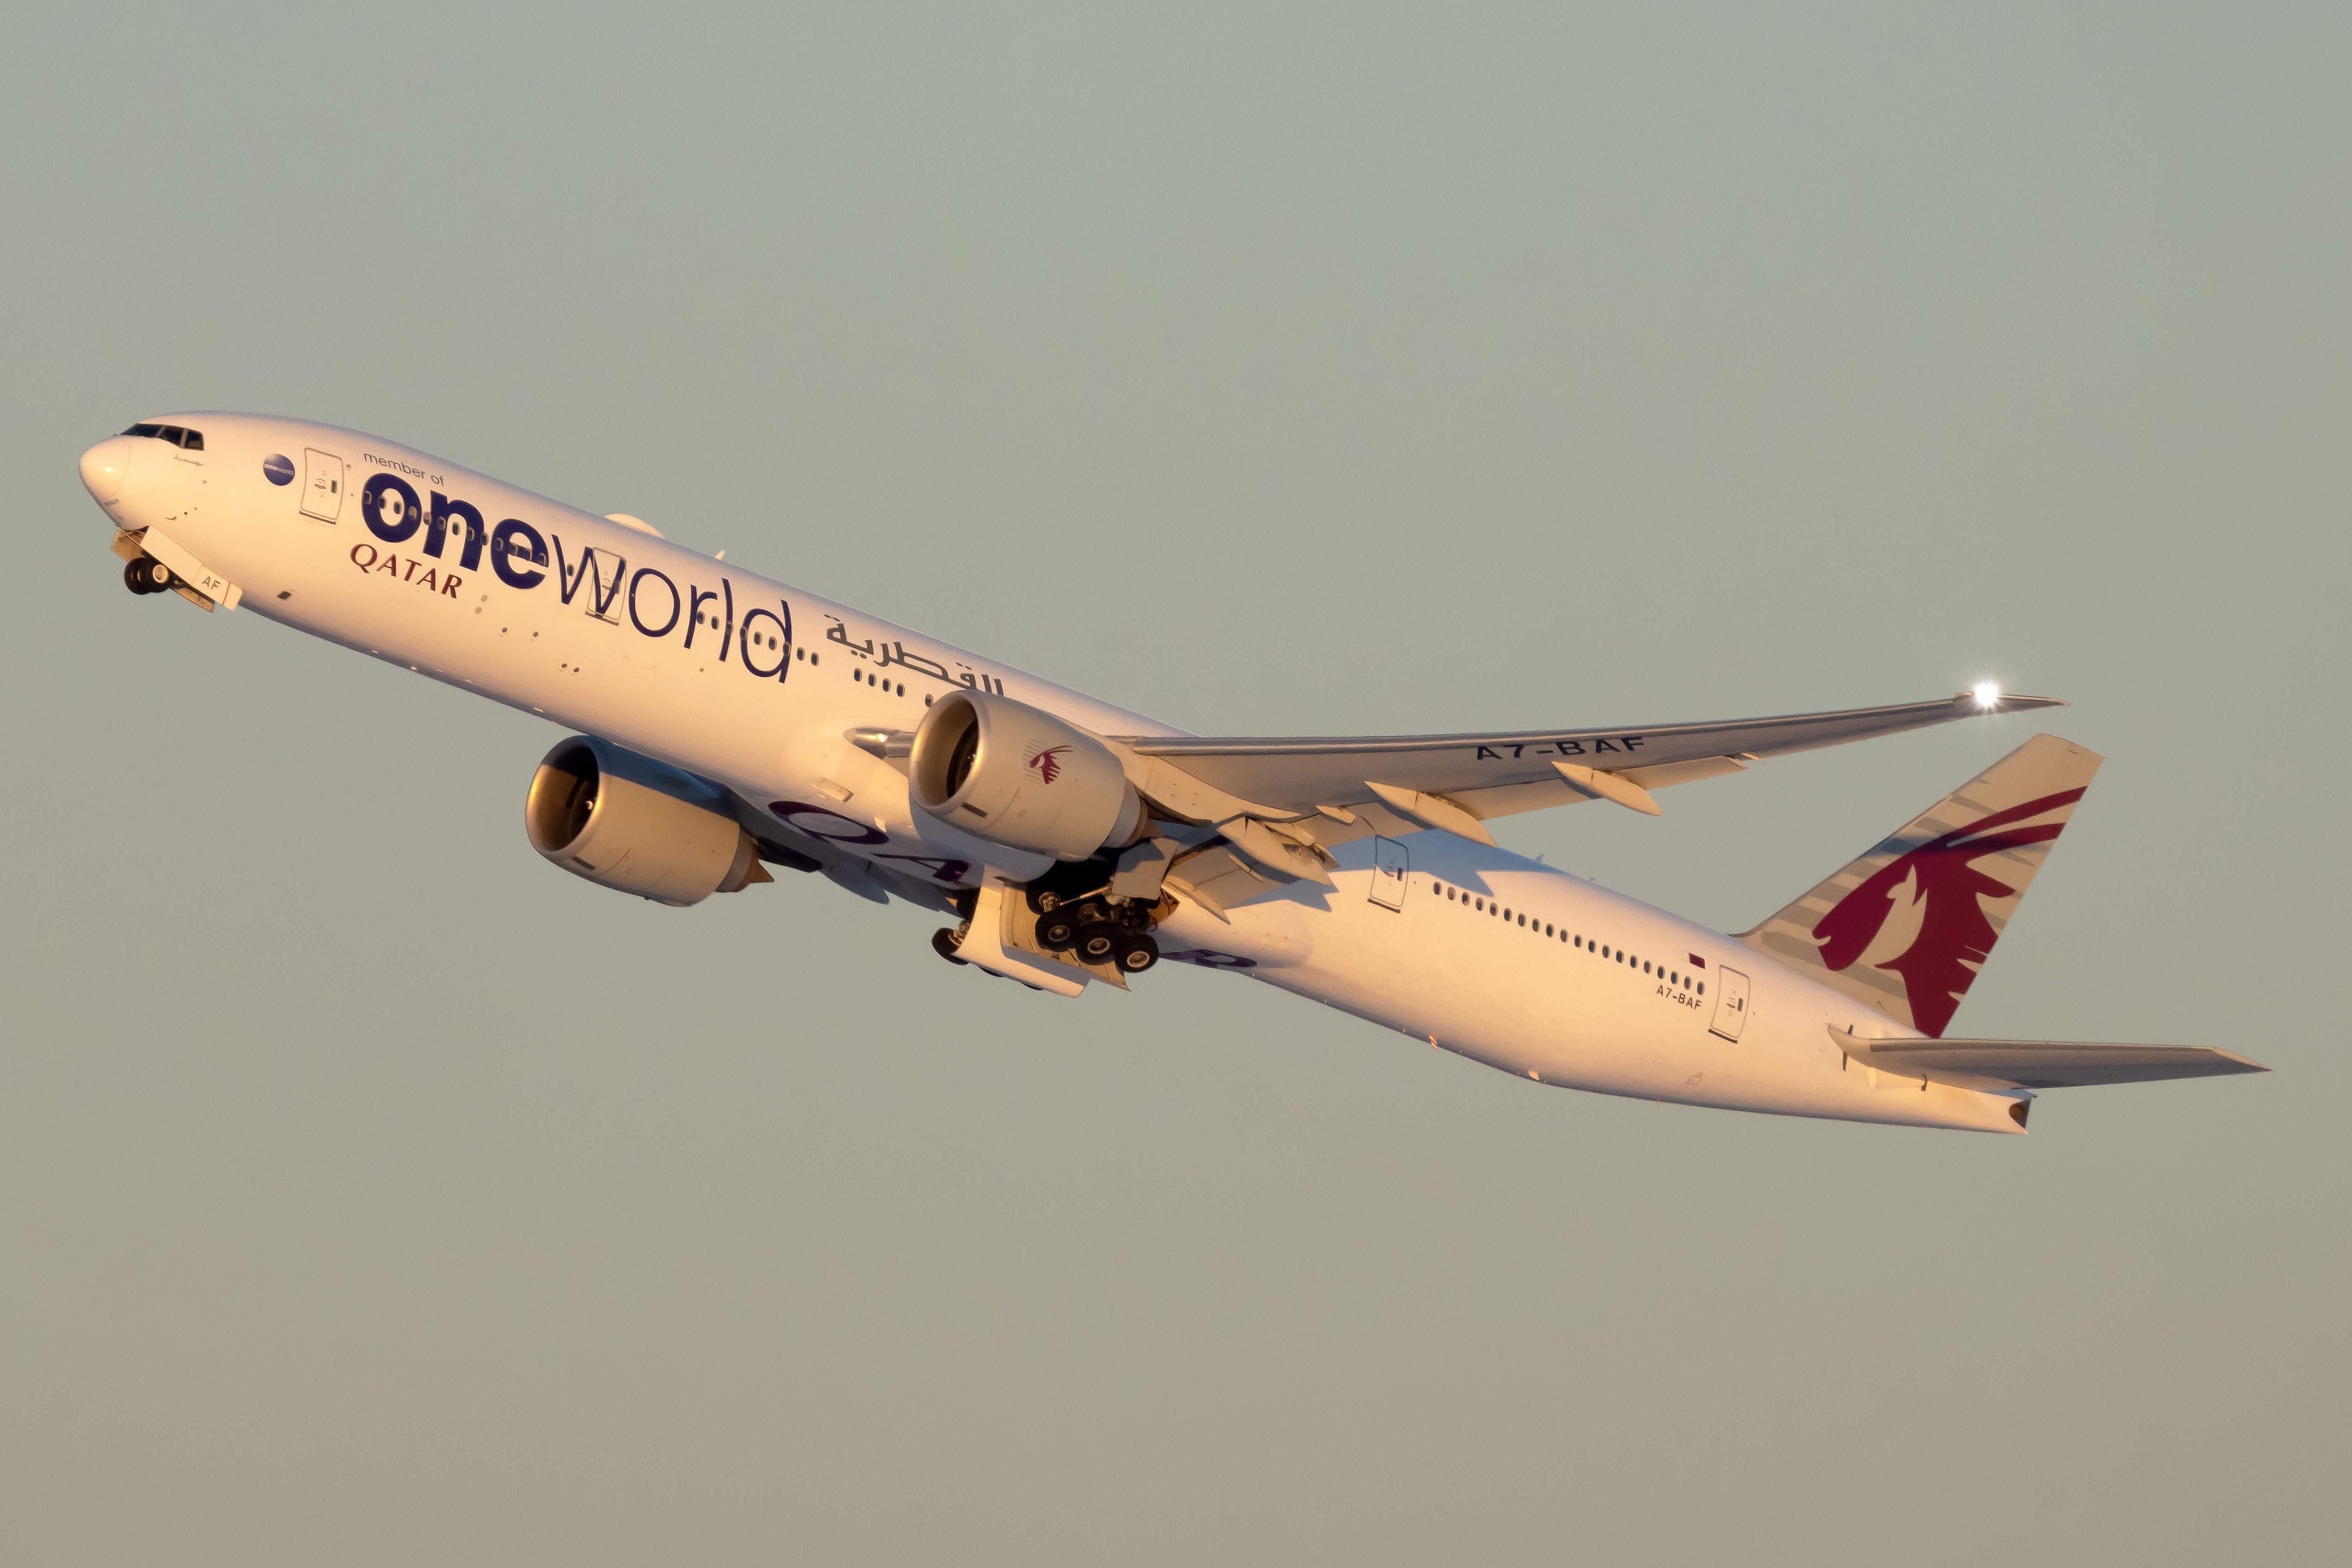 Qatar Airways Boeing 777-300ER in the oneworld livery